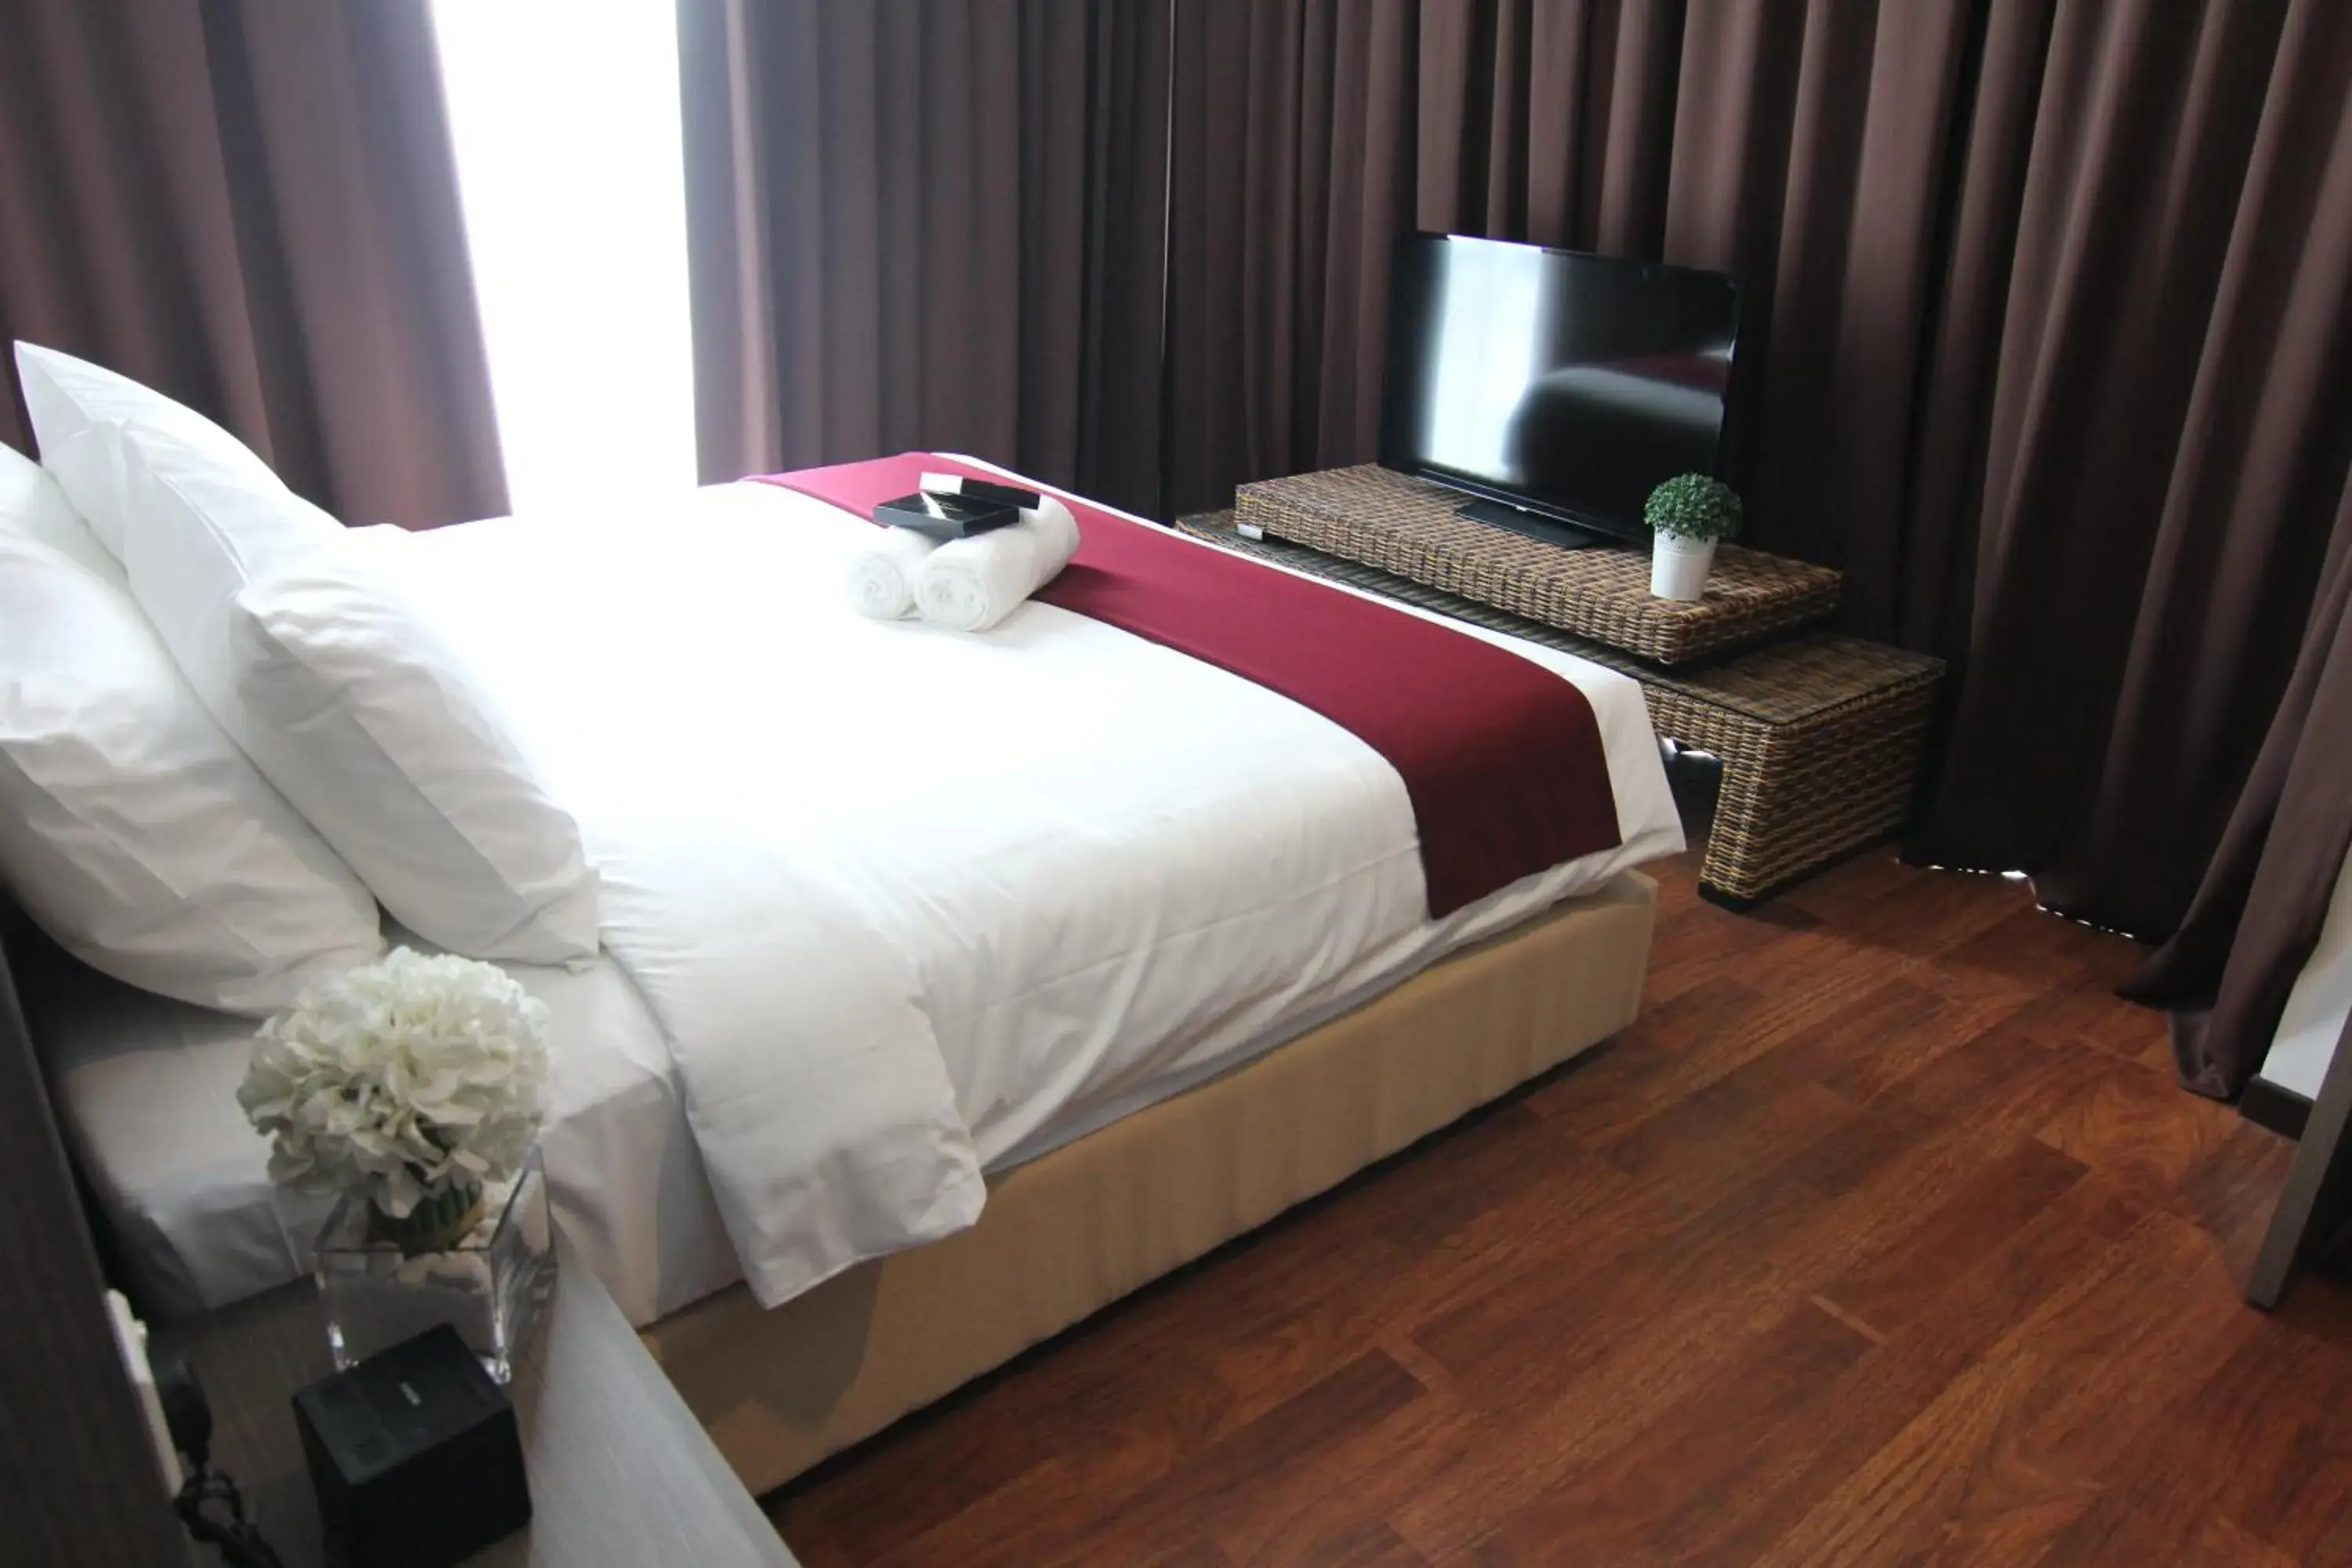 Bed, Room Photo in Nexus Business Suite Hotel